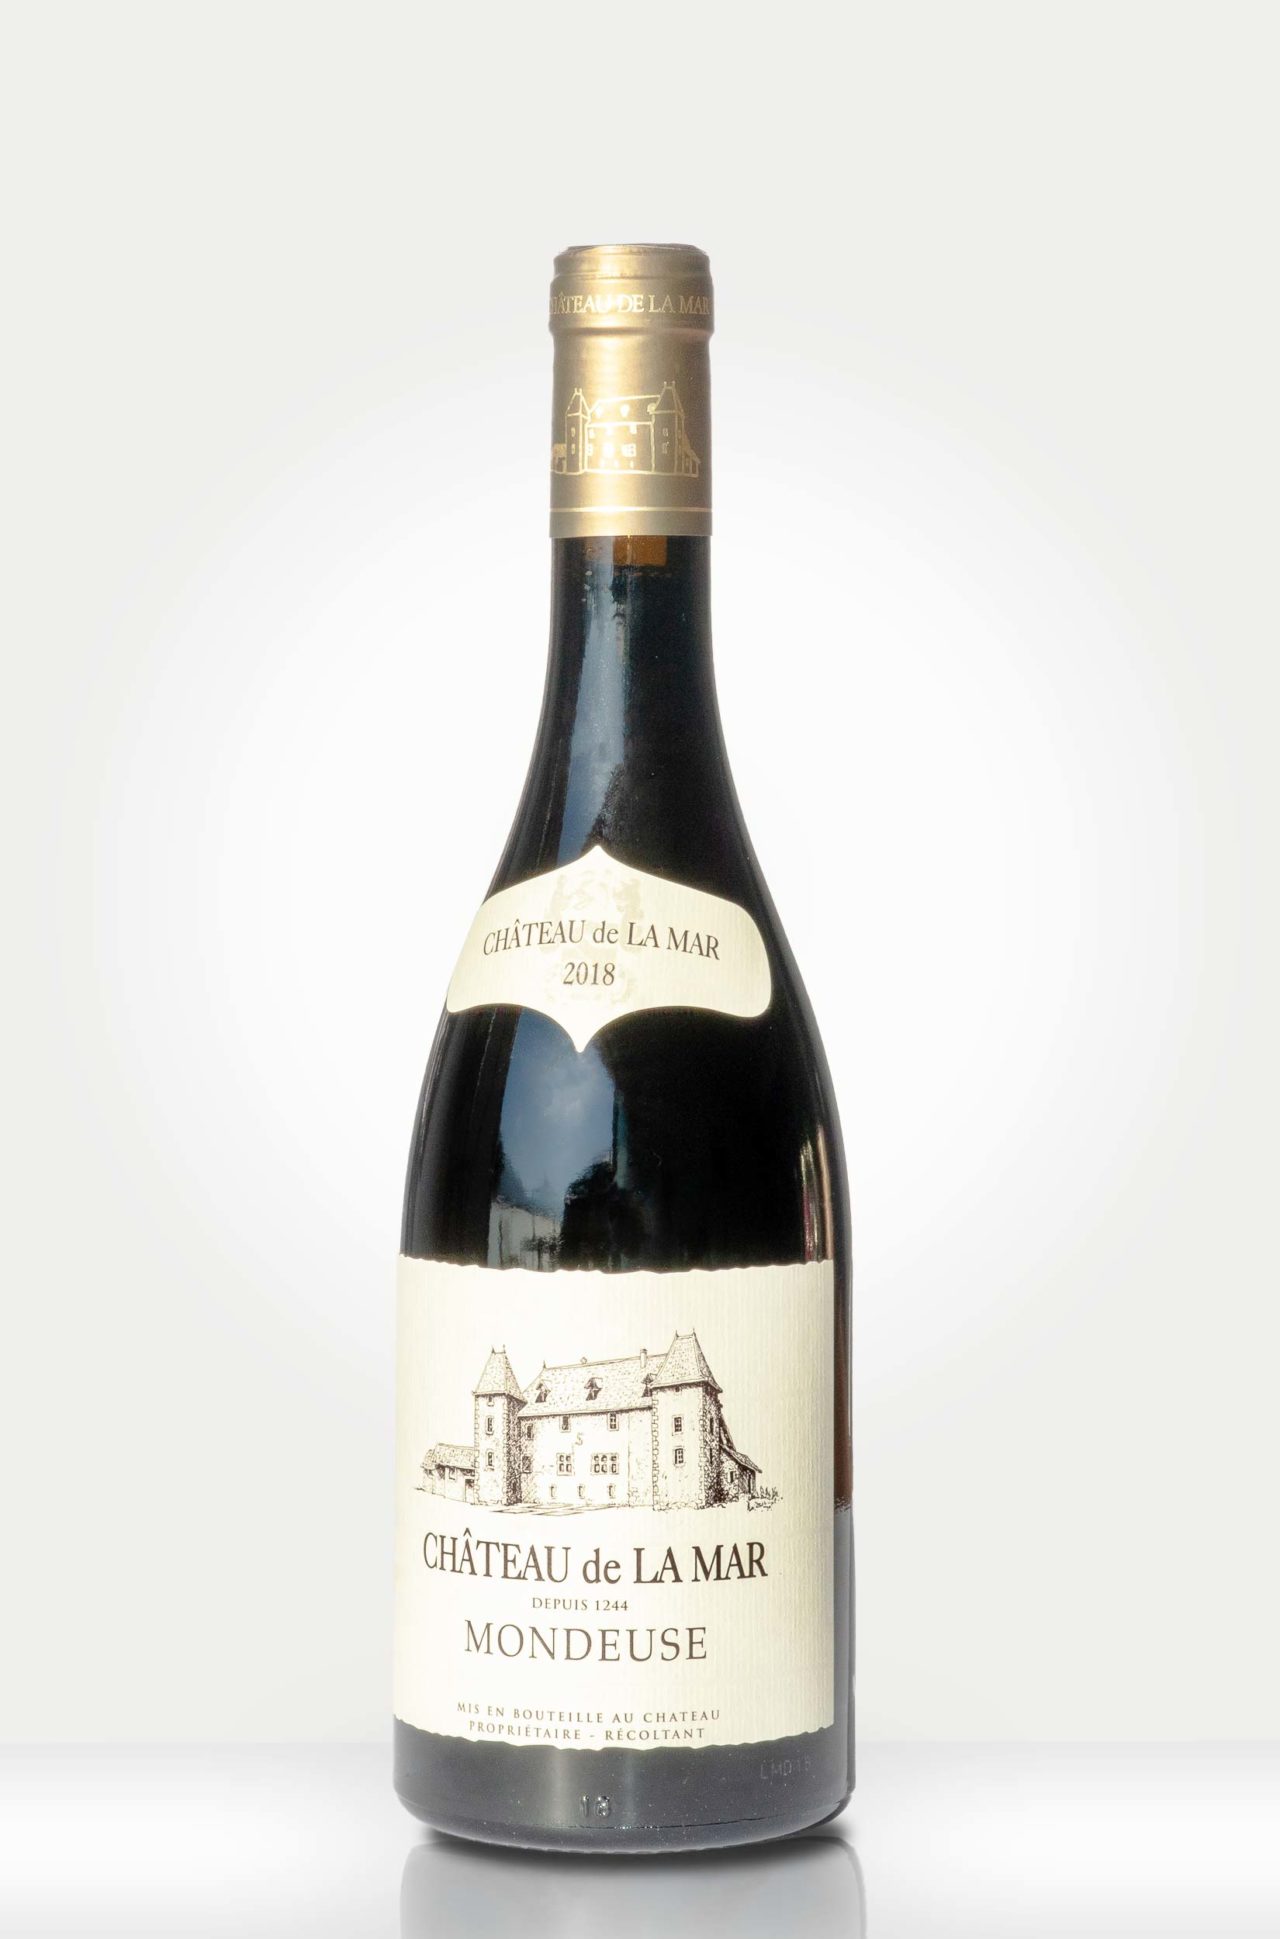 Bouteille Mondeuse Savoie - Vin rouge de Savoie